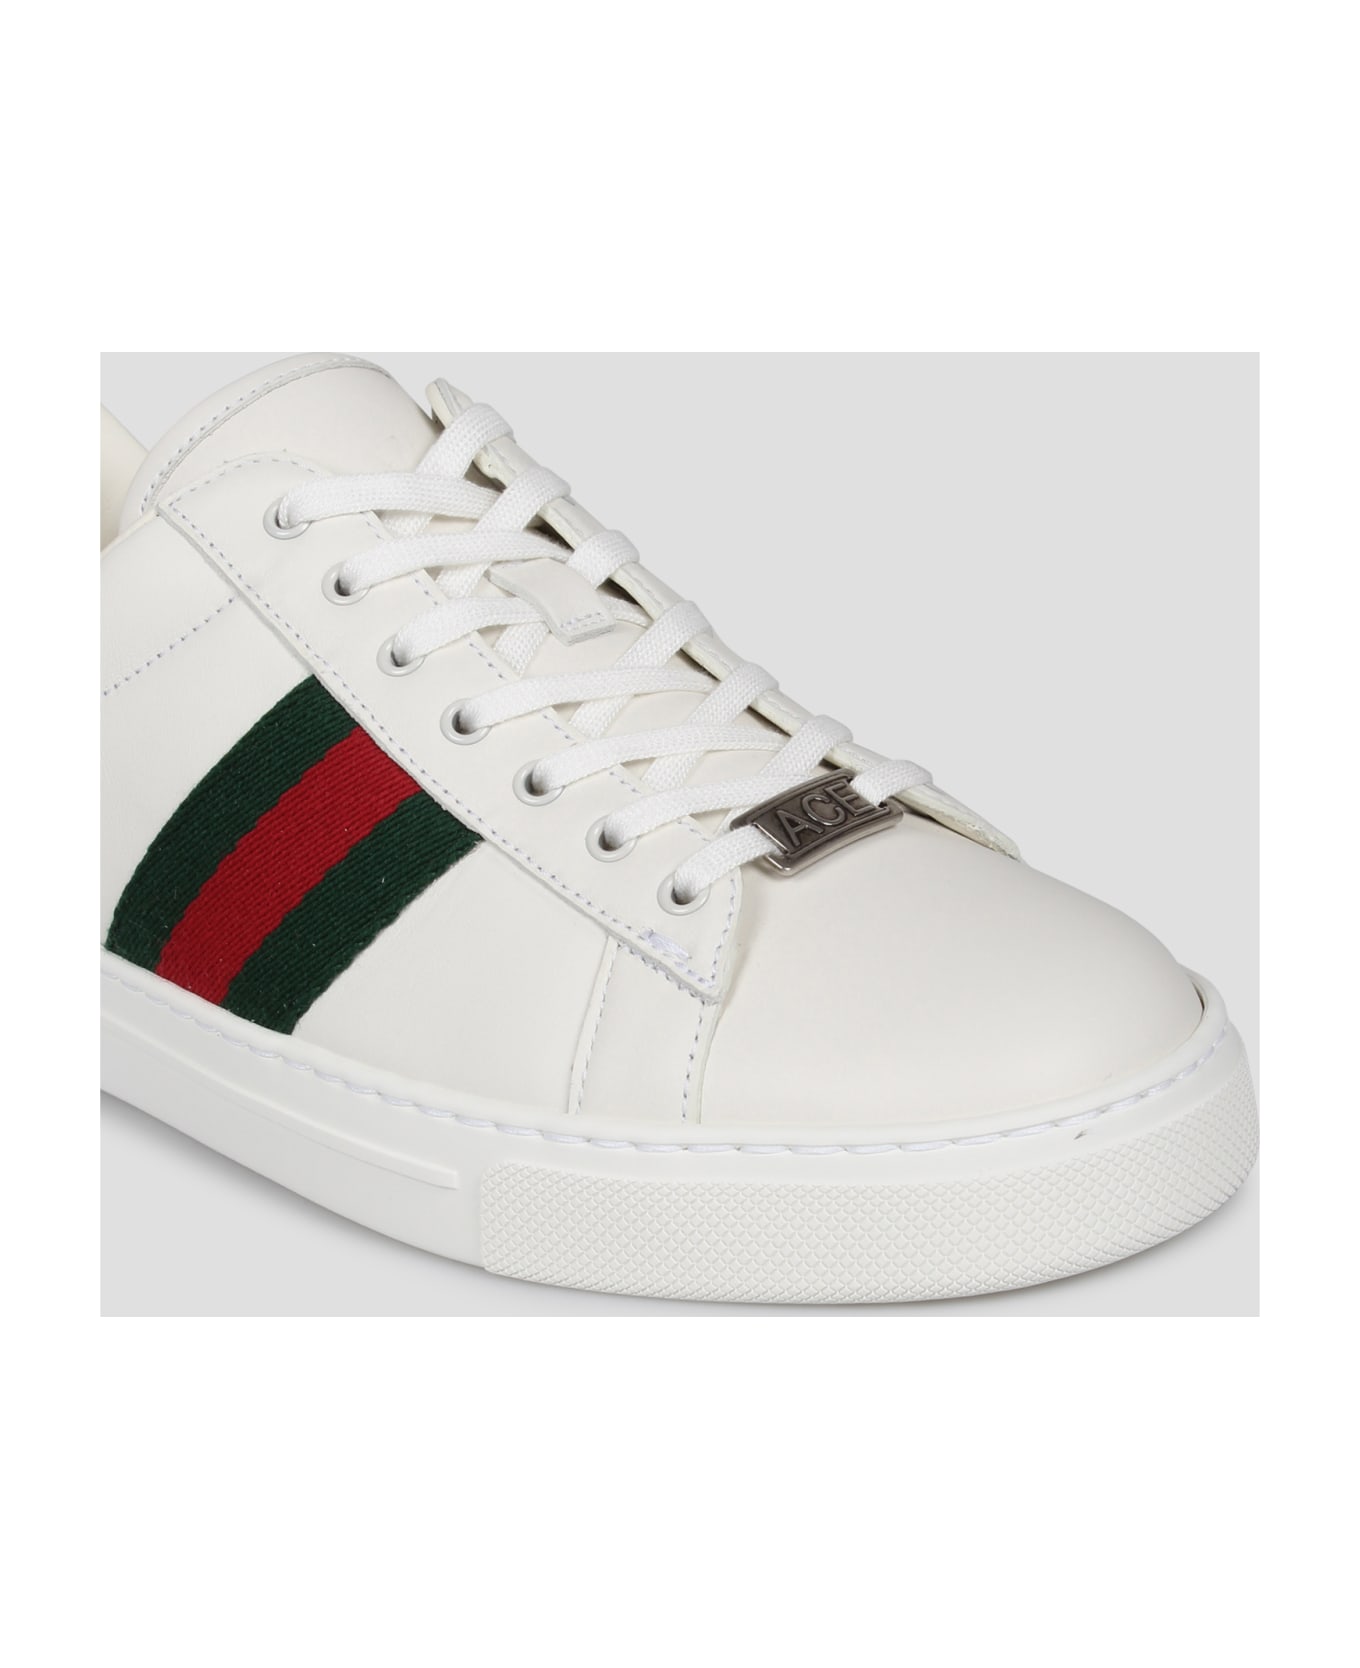 Gucci Ace Sneaker - White